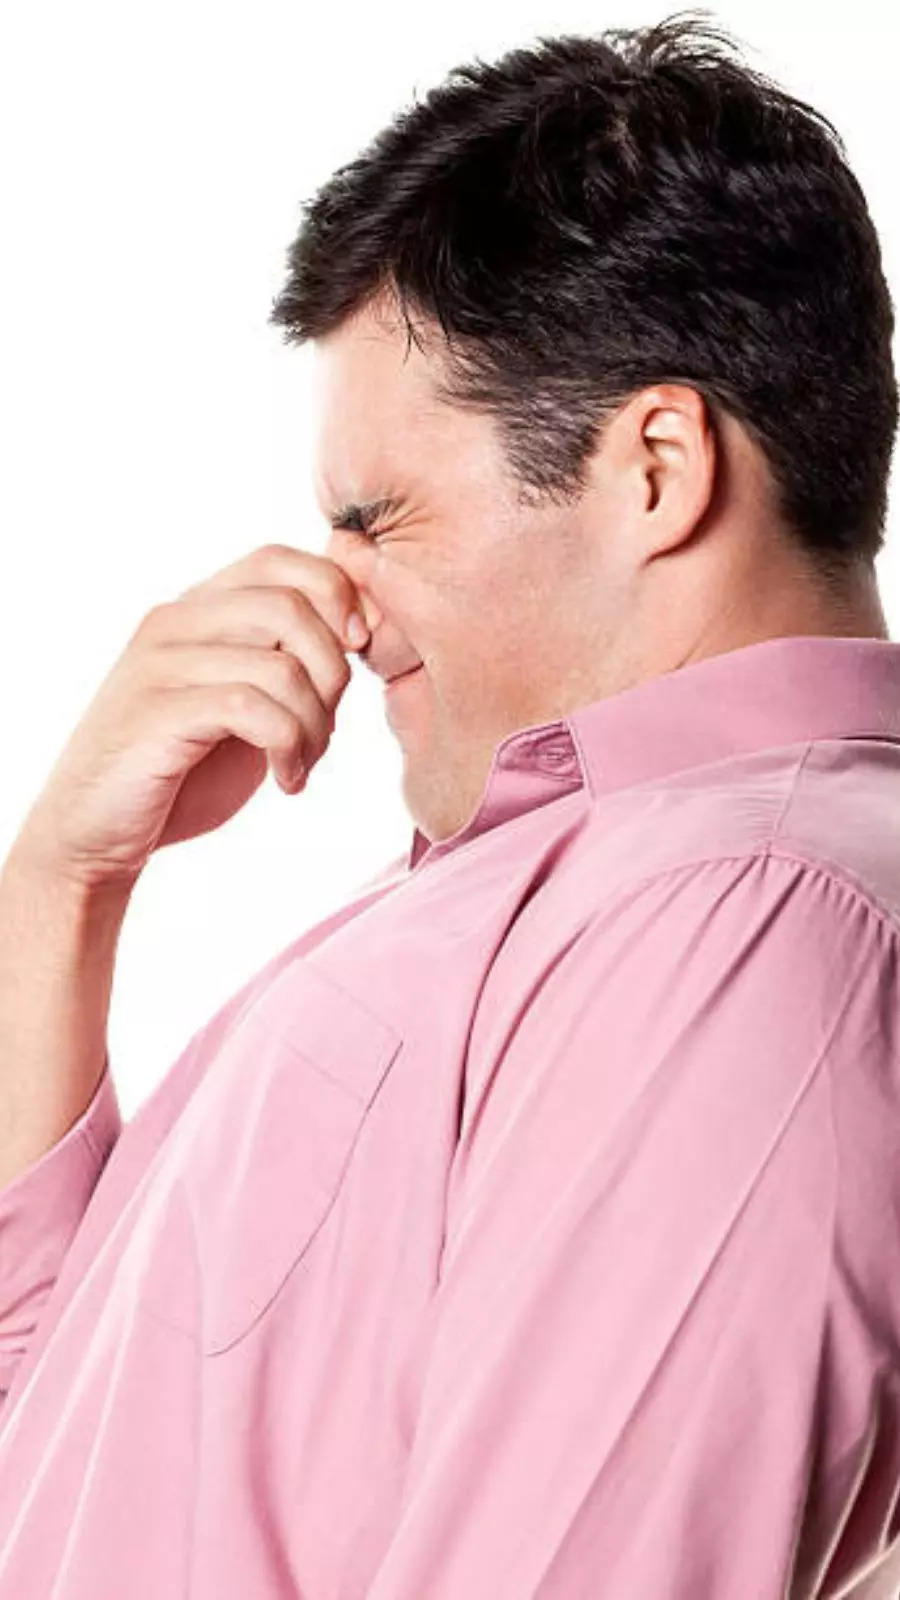 body odour: Ways to get rid of body odor